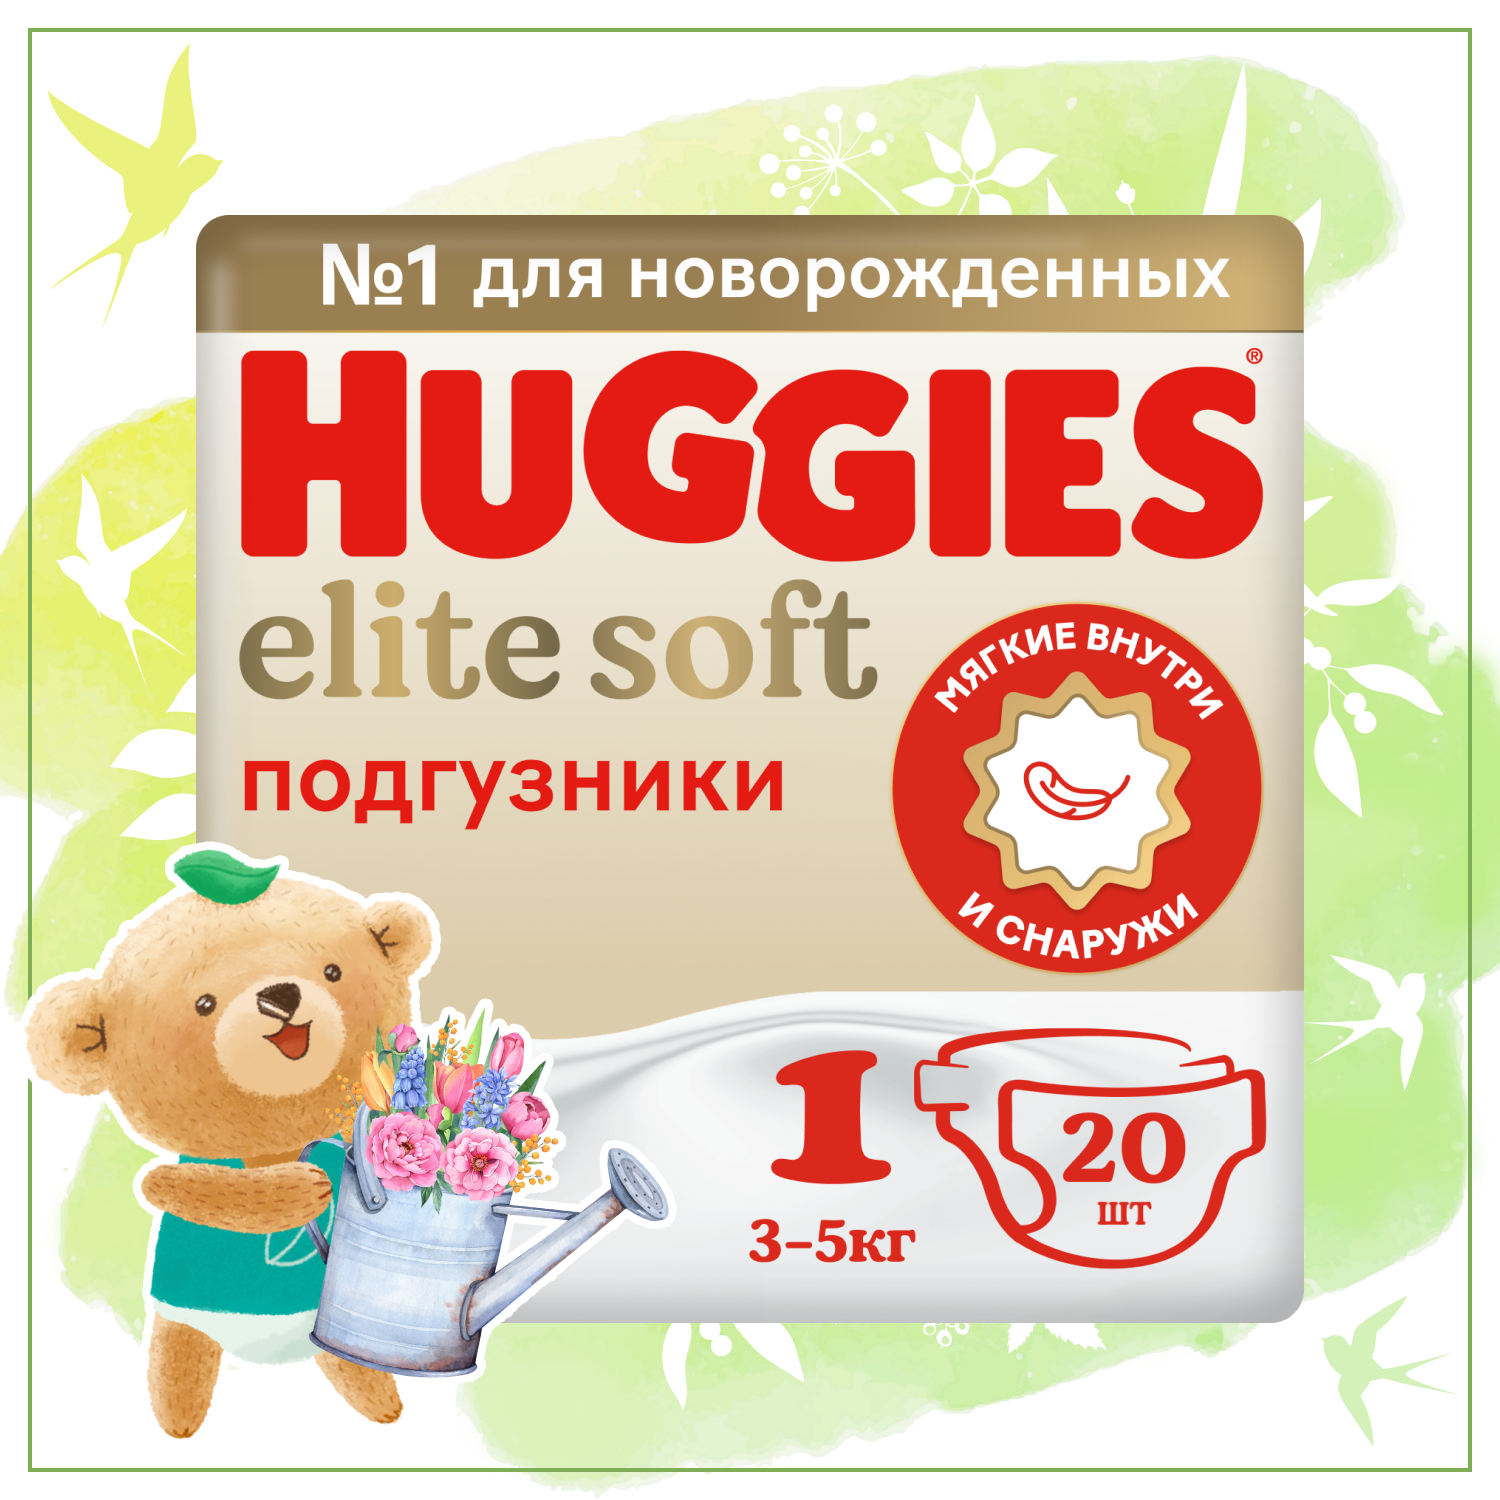 Подгузники Huggies Elite Soft для новорожденных 1 3-5кг 20шт - фото 1